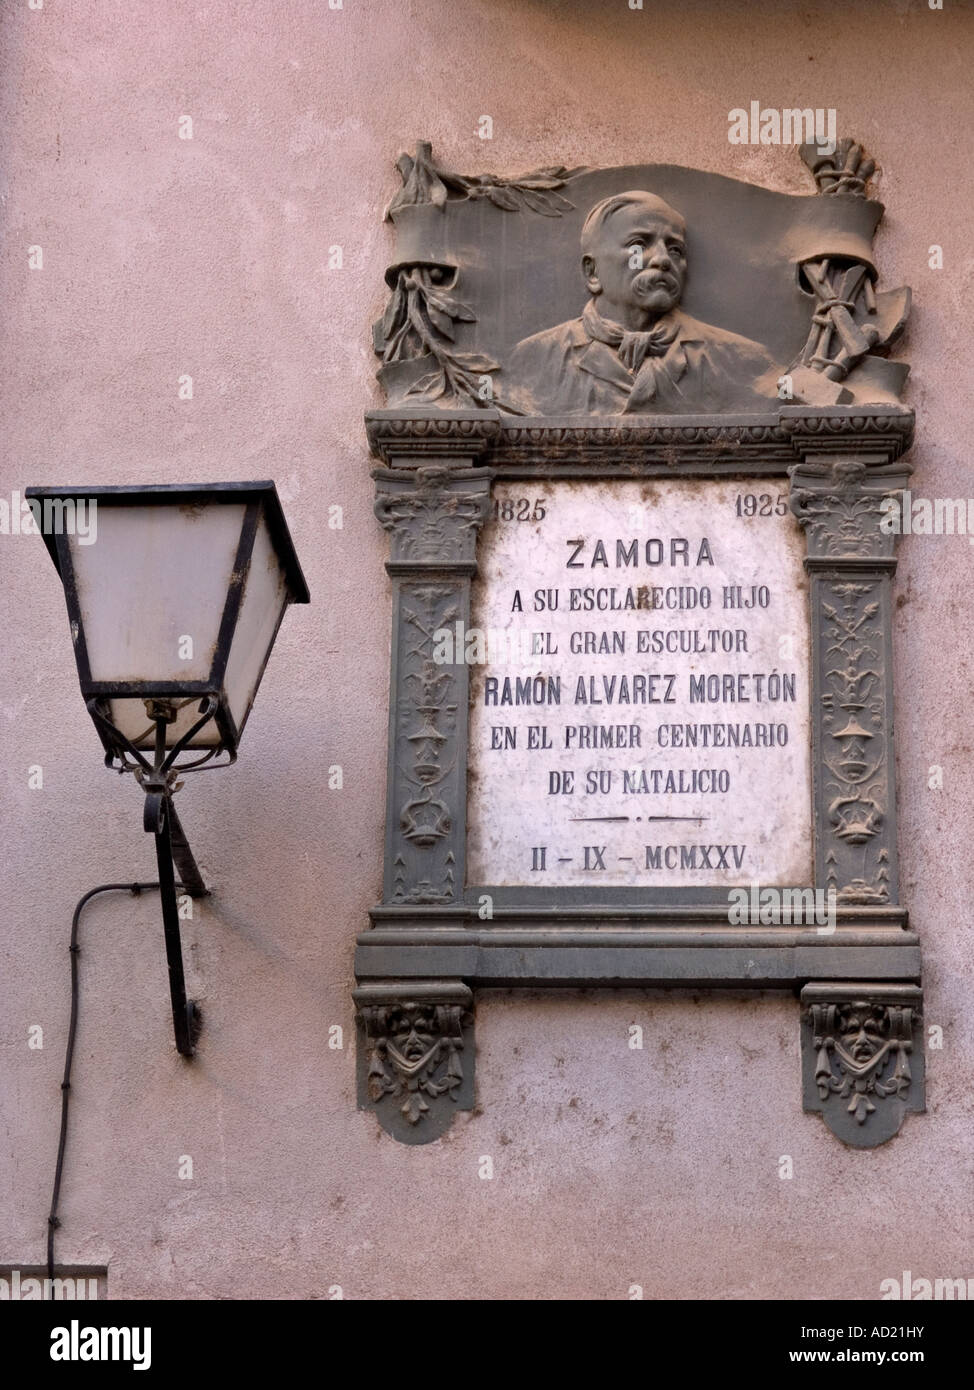 Commemorative plaque of Ramon Alvarez Moreton in Balborraz street Zamora Spain Stock Photo